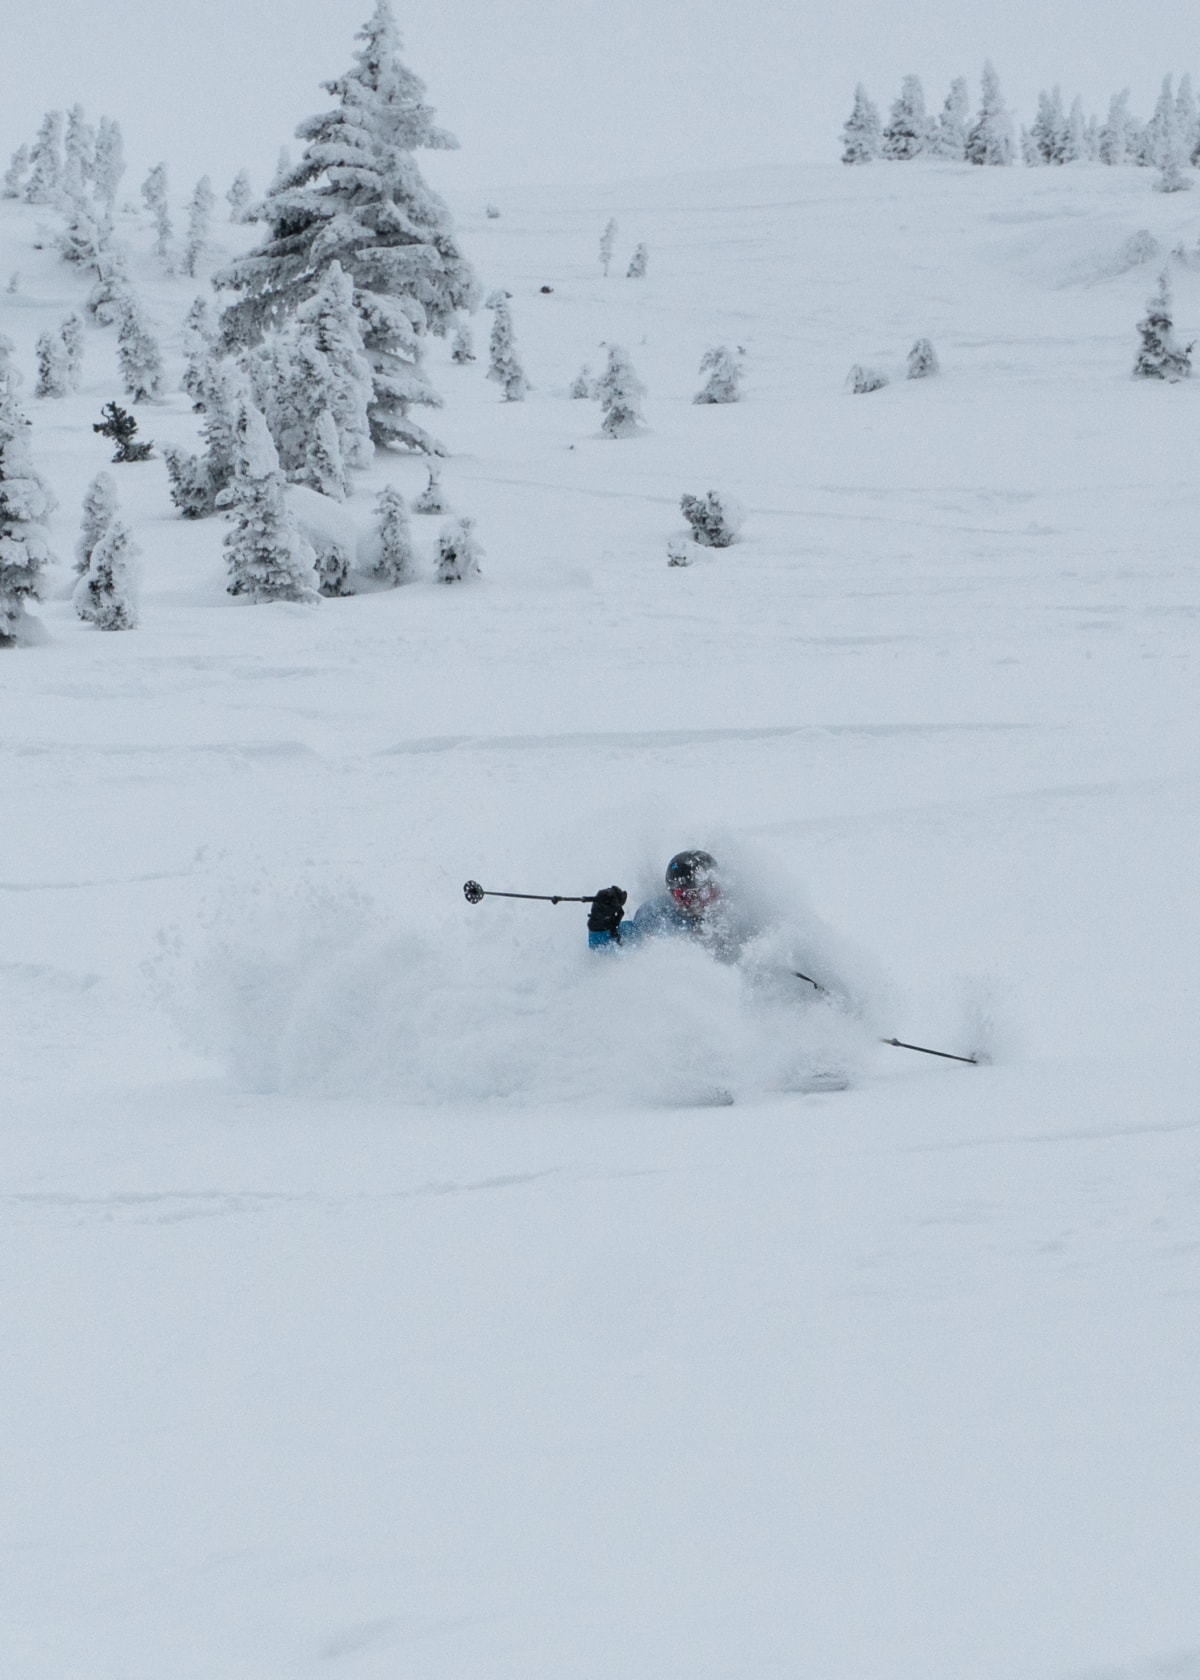 skier slashing a powerful turn in deep powder